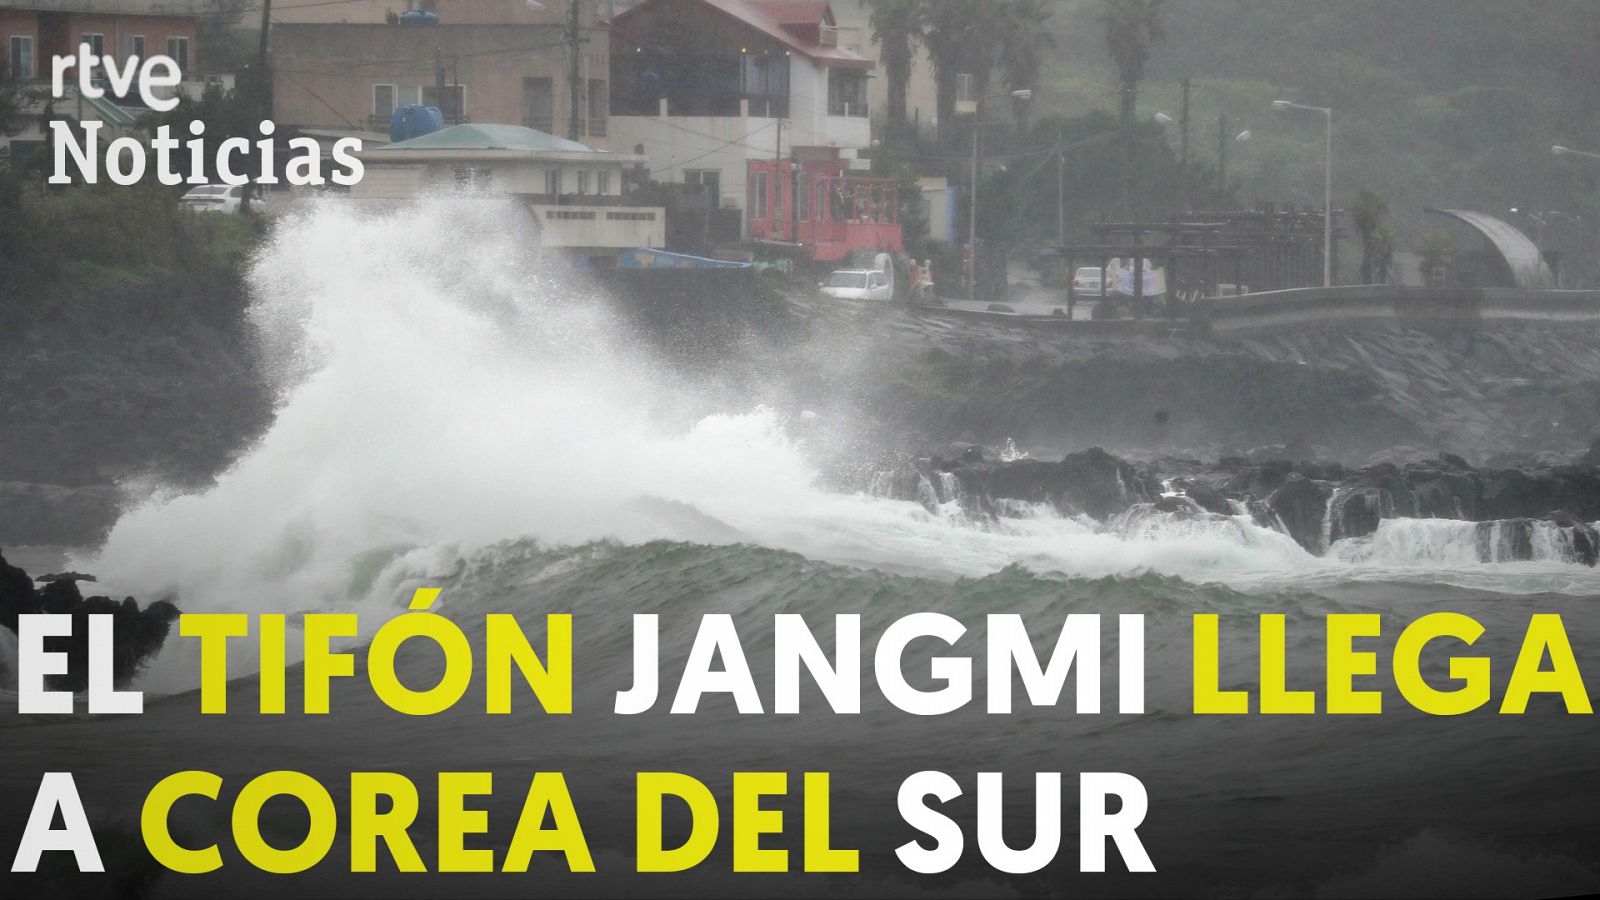 Corea del Sur se prepara para recibir al tifón Jangmi - RTVE.es